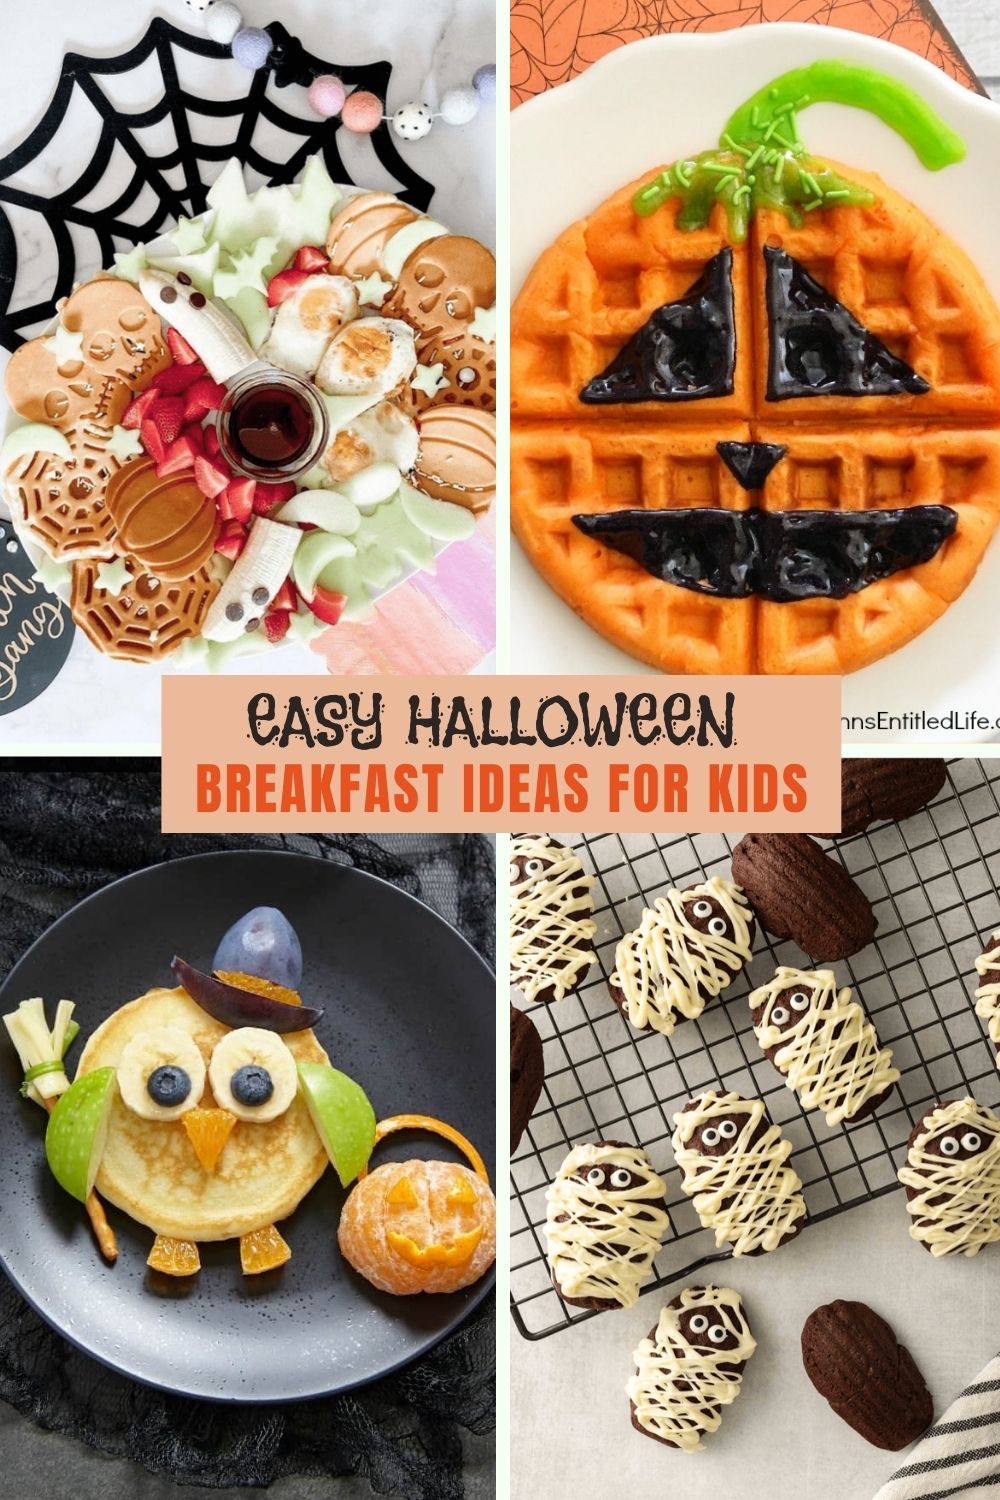 Easy Halloween breakfast ideas for kids